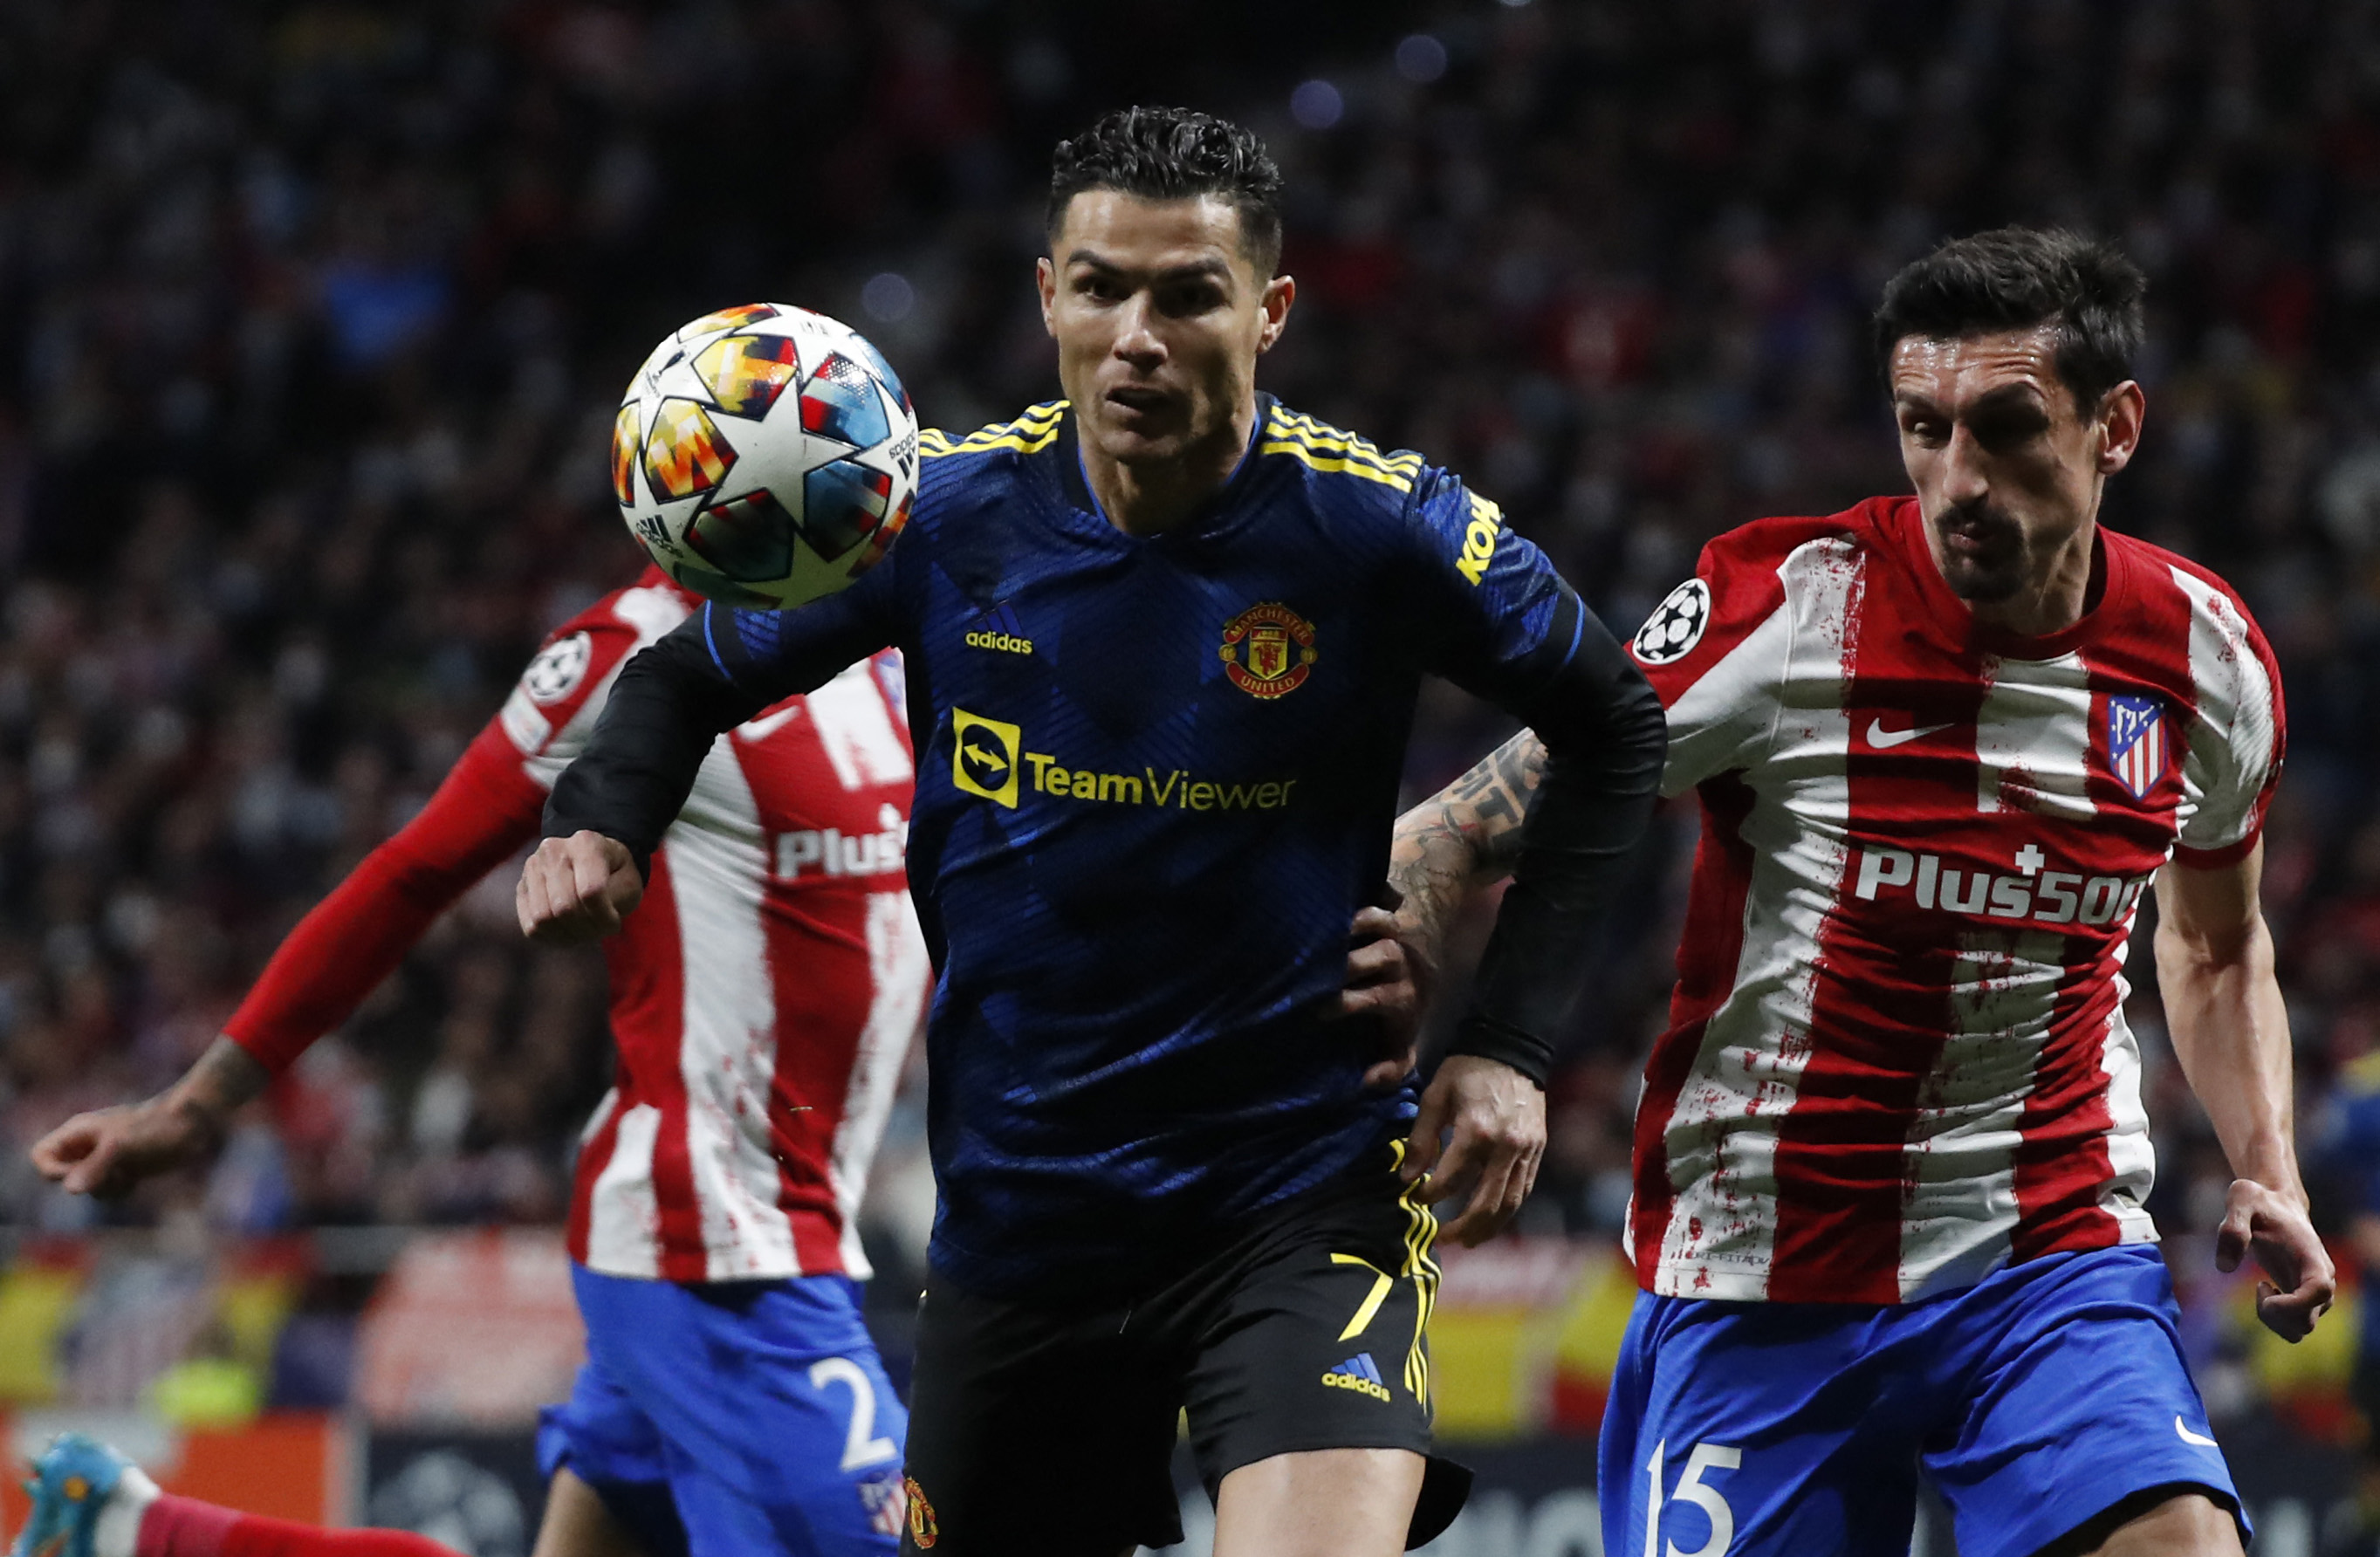 Cristiano Ronaldo enfrentando al Atlético Madrid, otro club que suena para su futuro (REUTERS/Javier Barbancho)